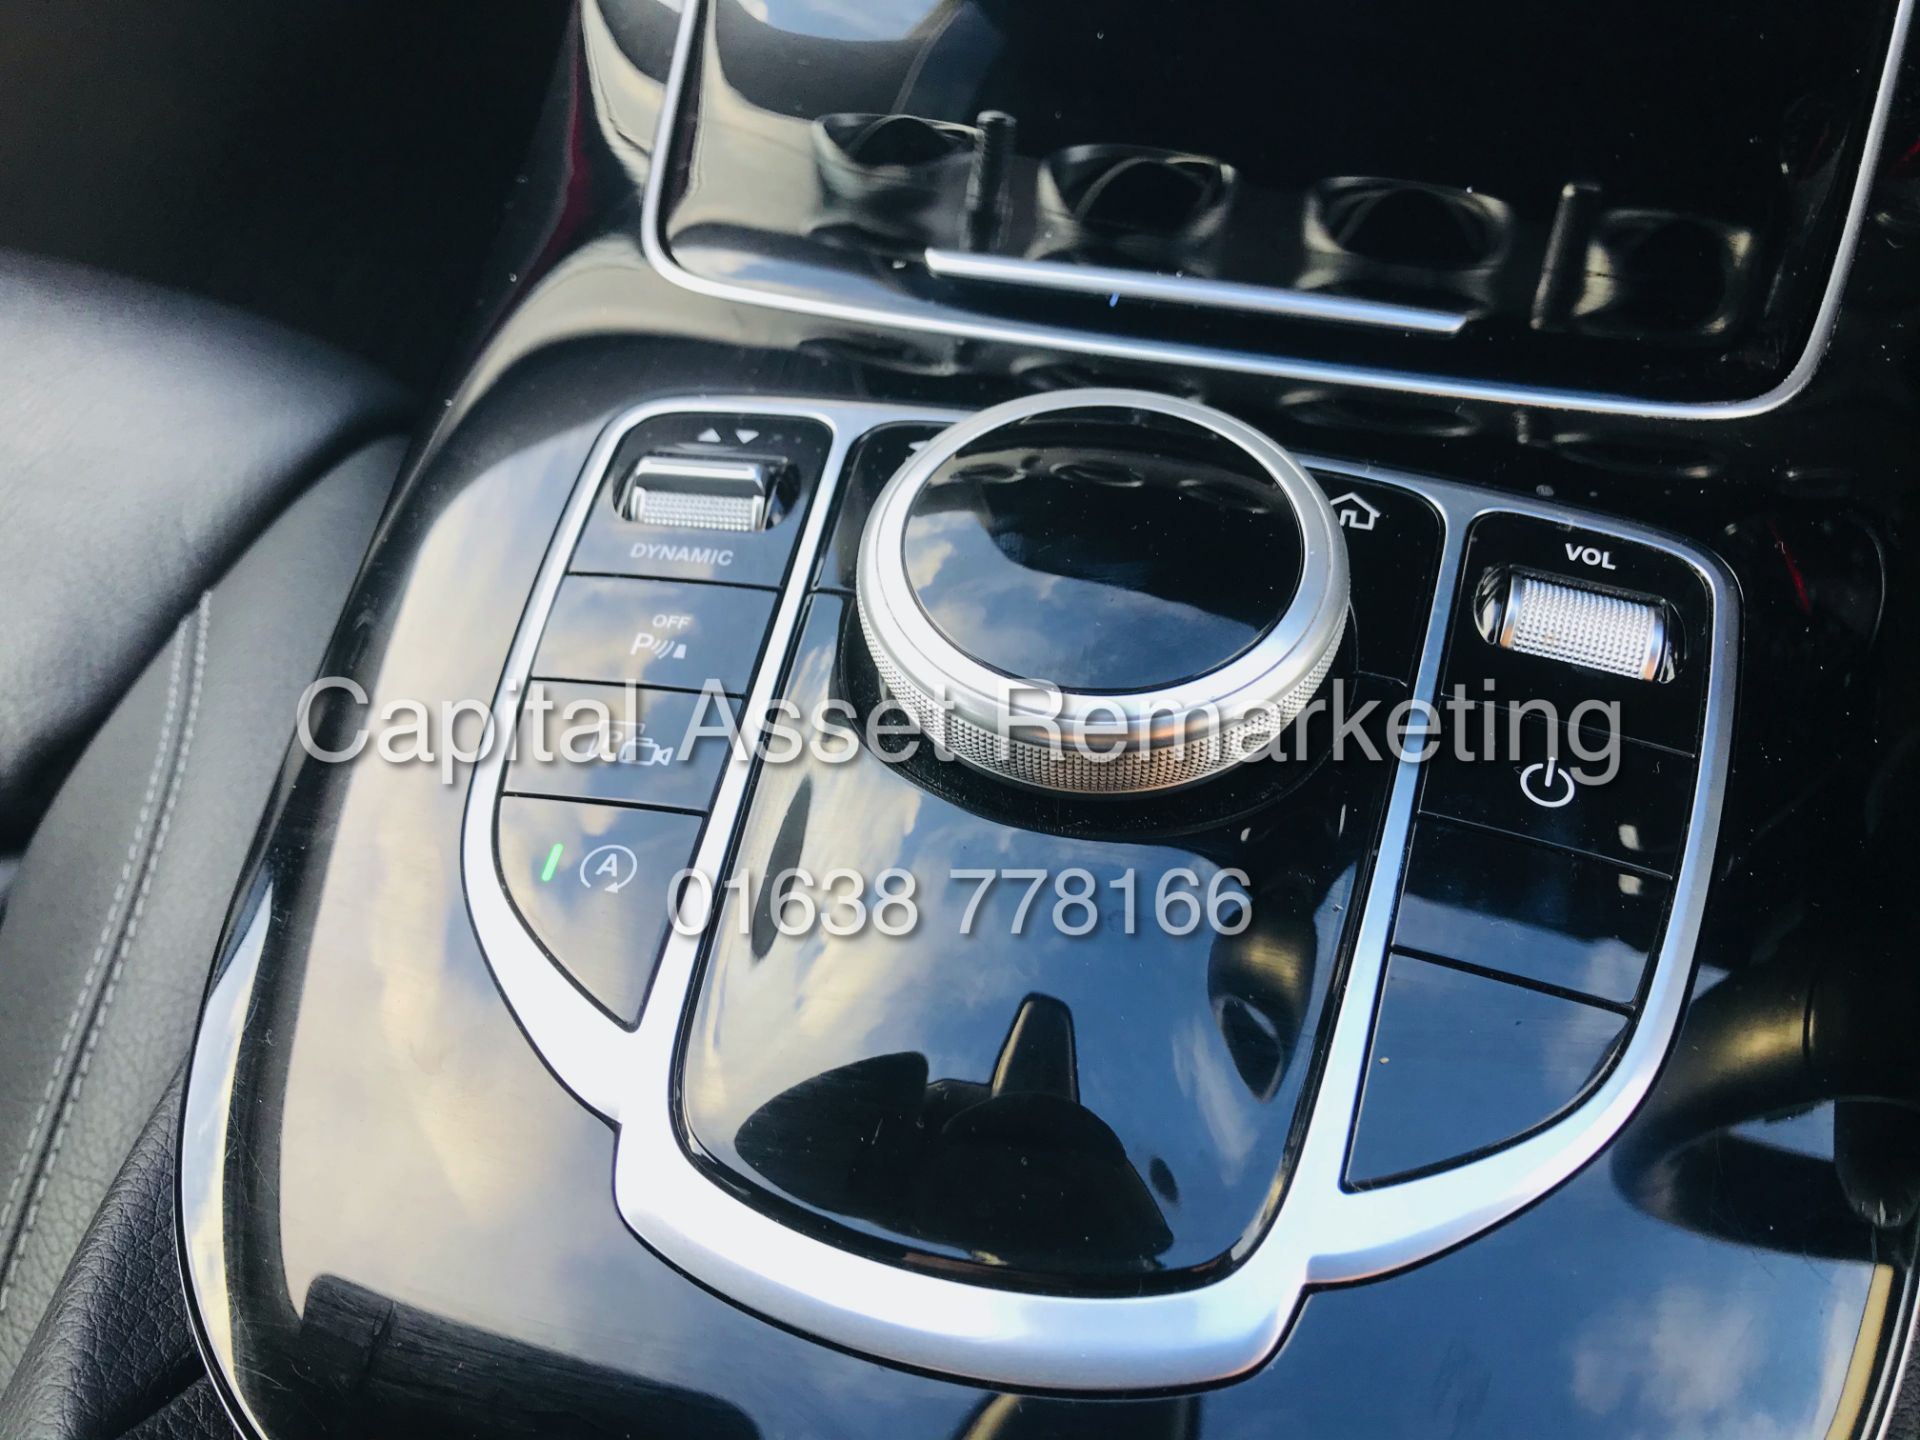 MERCEDES E220d "SE" 9G AUTO 4 DOOR SALOON (2019 MODEL) SAT NAV - LEATHER - HUGE SPEC - LOOK!!! - Image 28 of 37